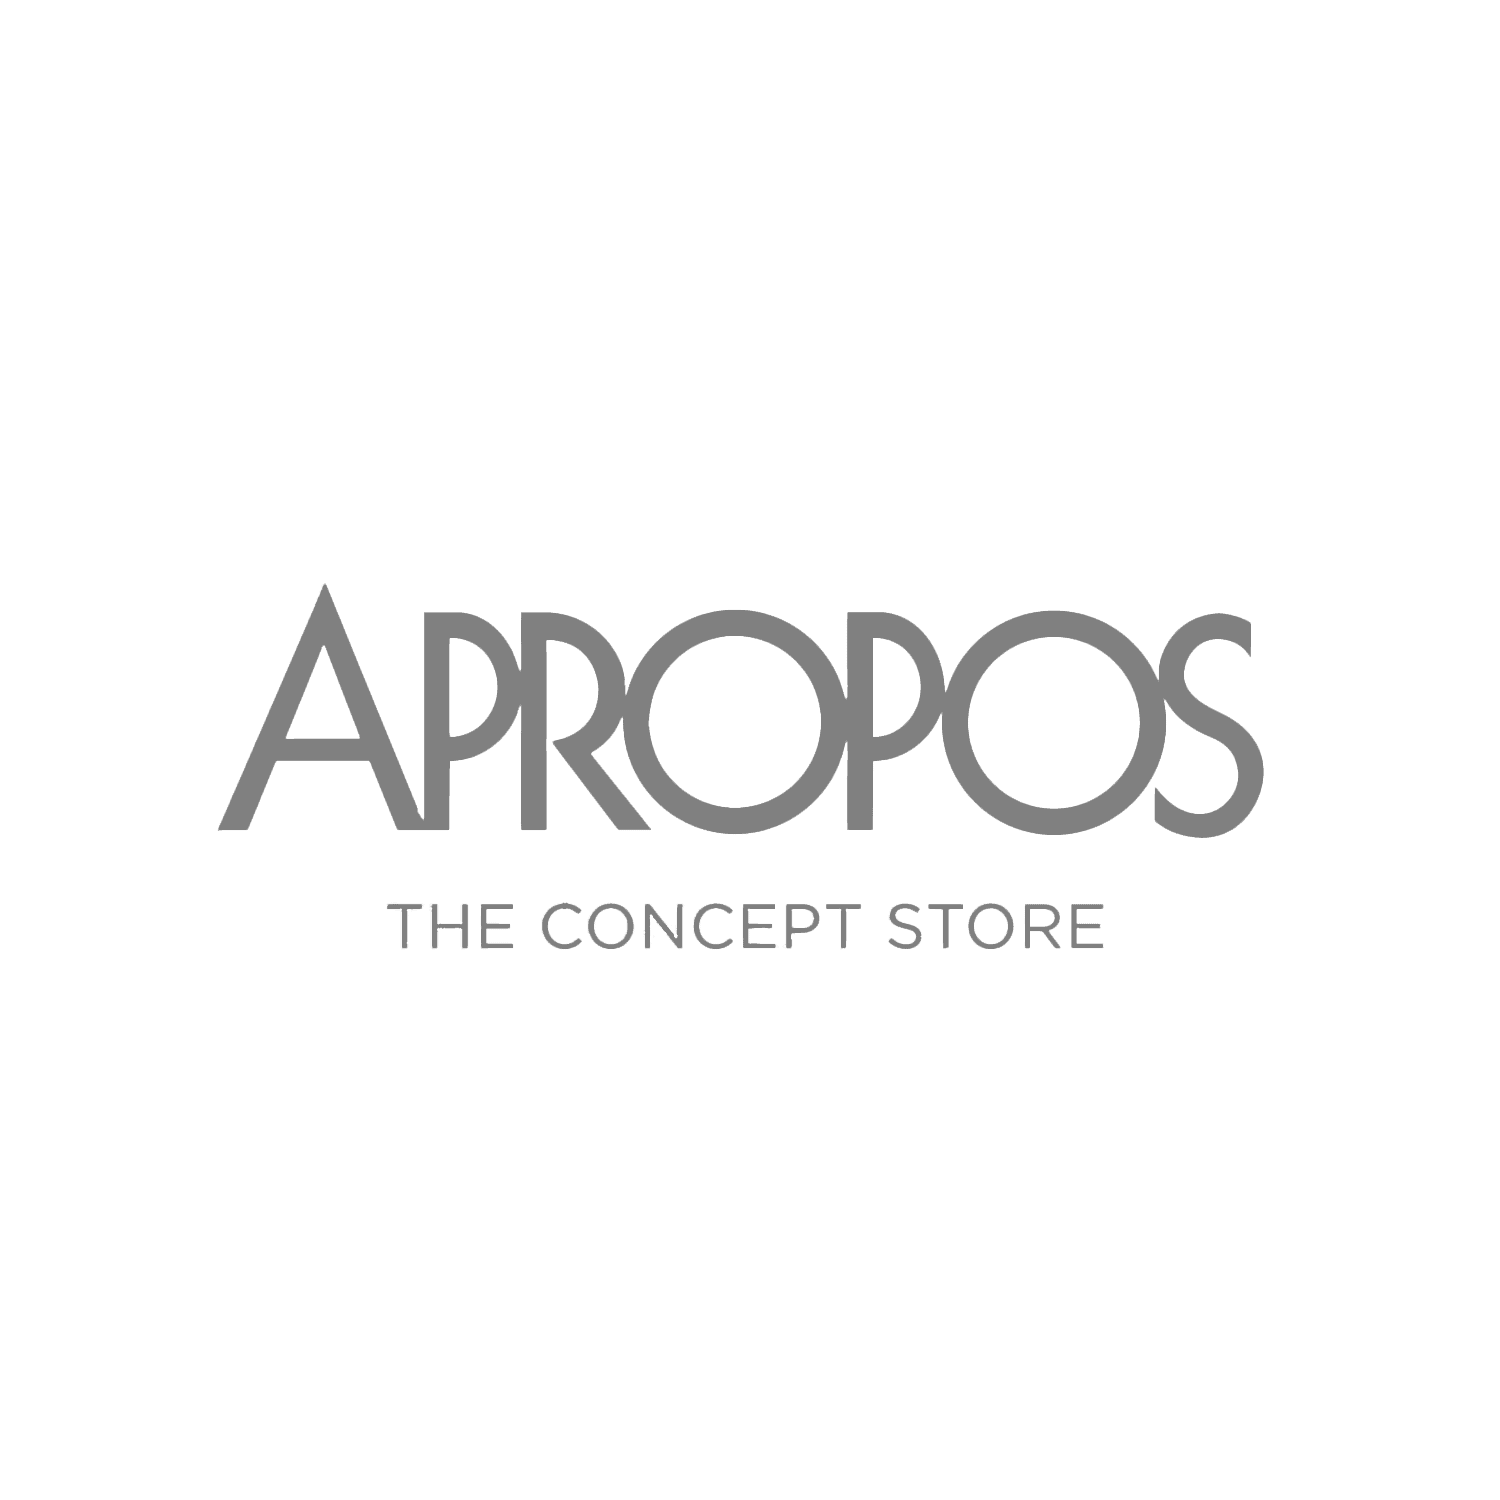 Das Logo von Apropos the concept store